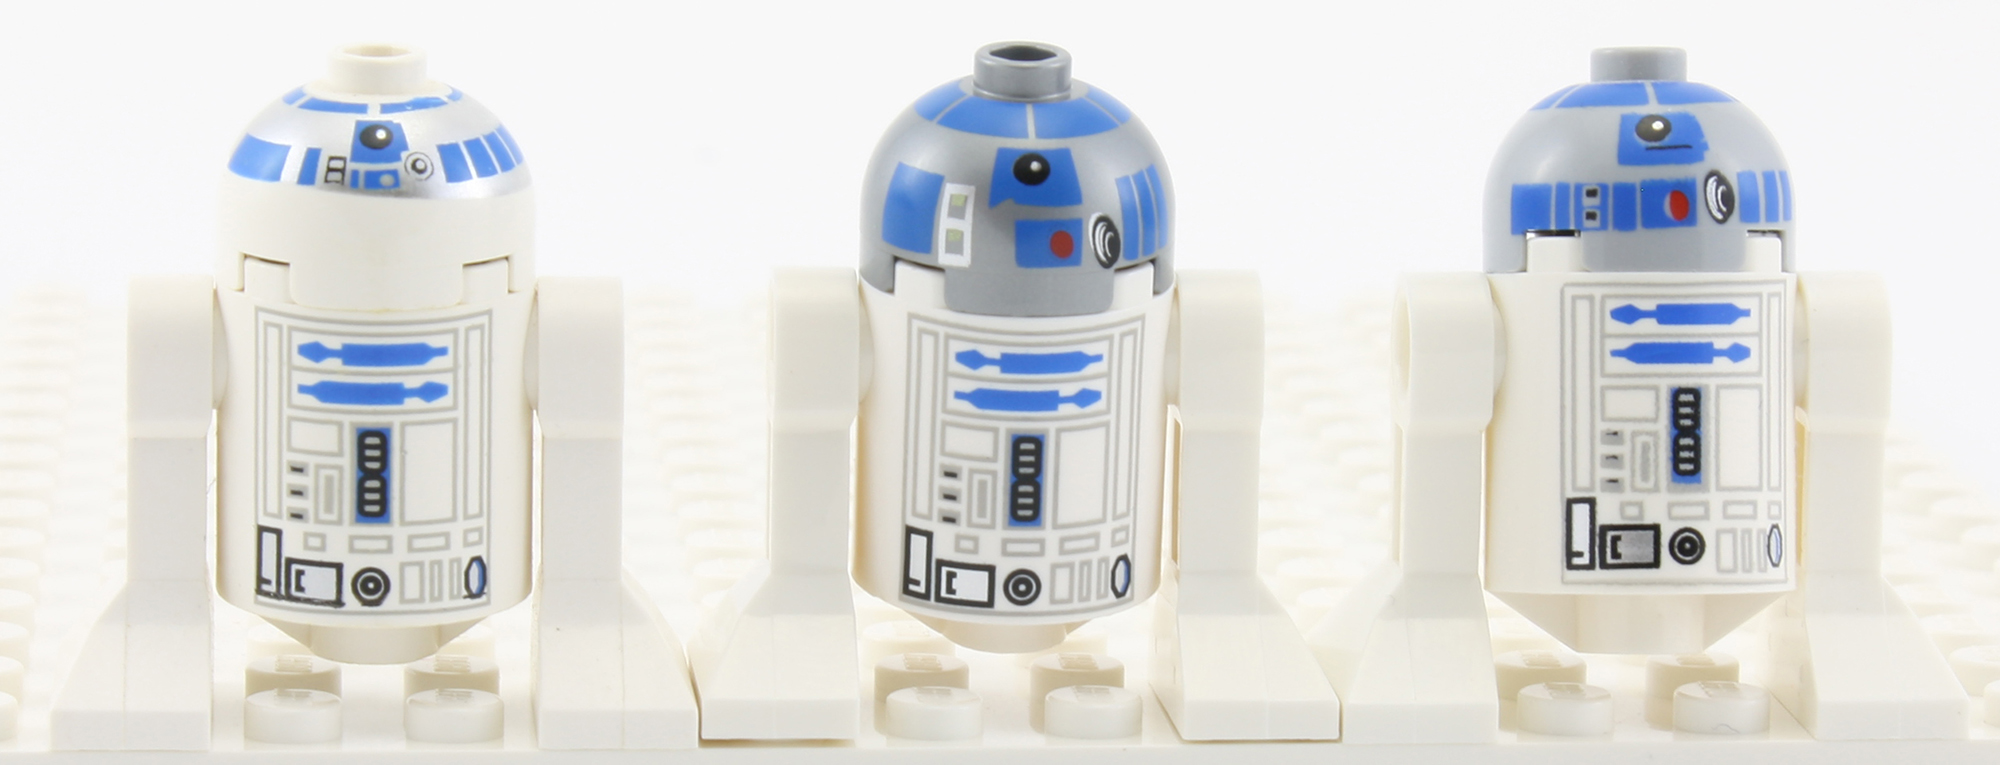 R2-D2 - Comparison - FBTB